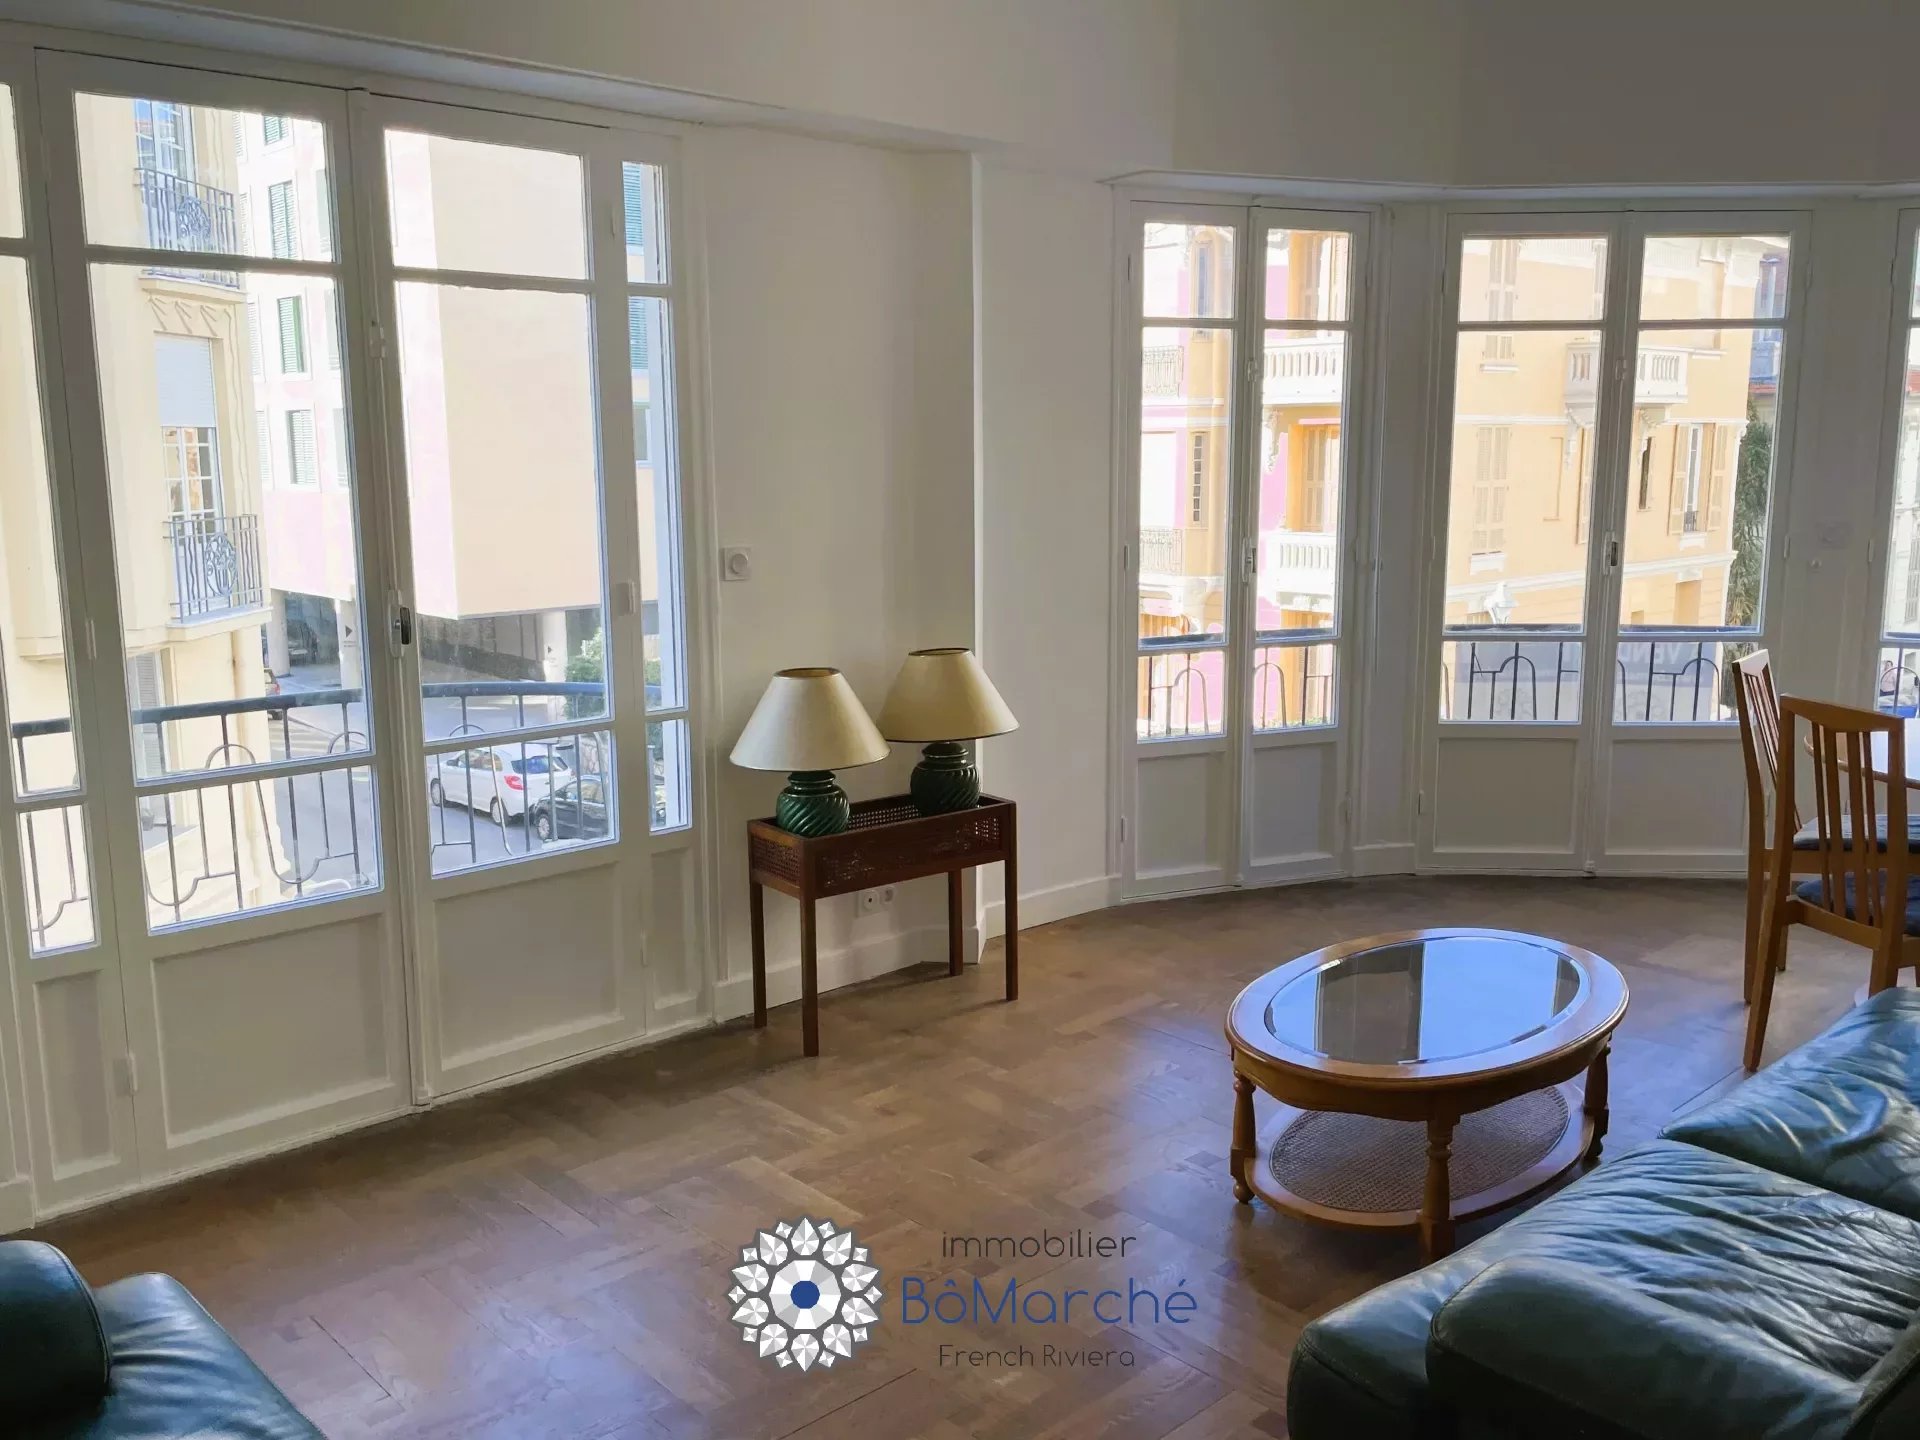 Vente Appartement 58m² 2 Pièces à Nice (06100) - Bômarché Immobilier